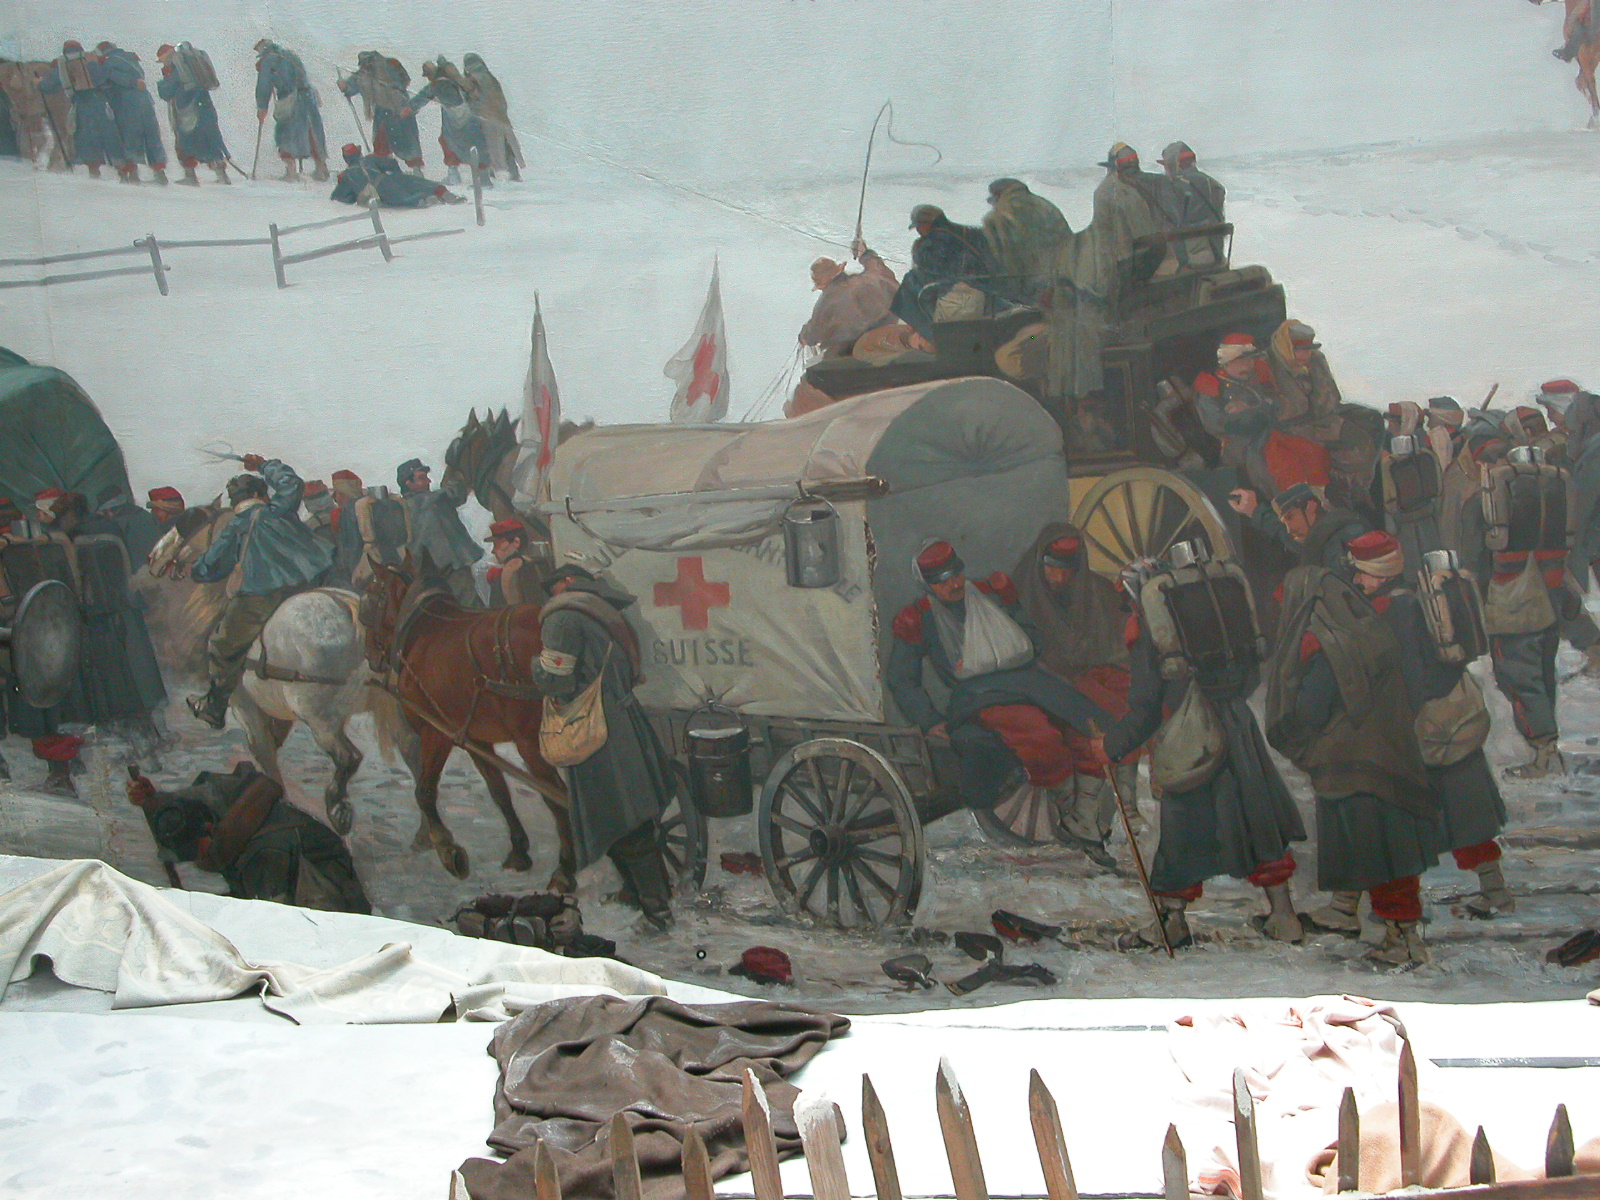 Particolare del dipinto "Panorama Bourbaki". Si vede un carro con cavalli bardati davanti, mentre dietro ci sono persone ferite.